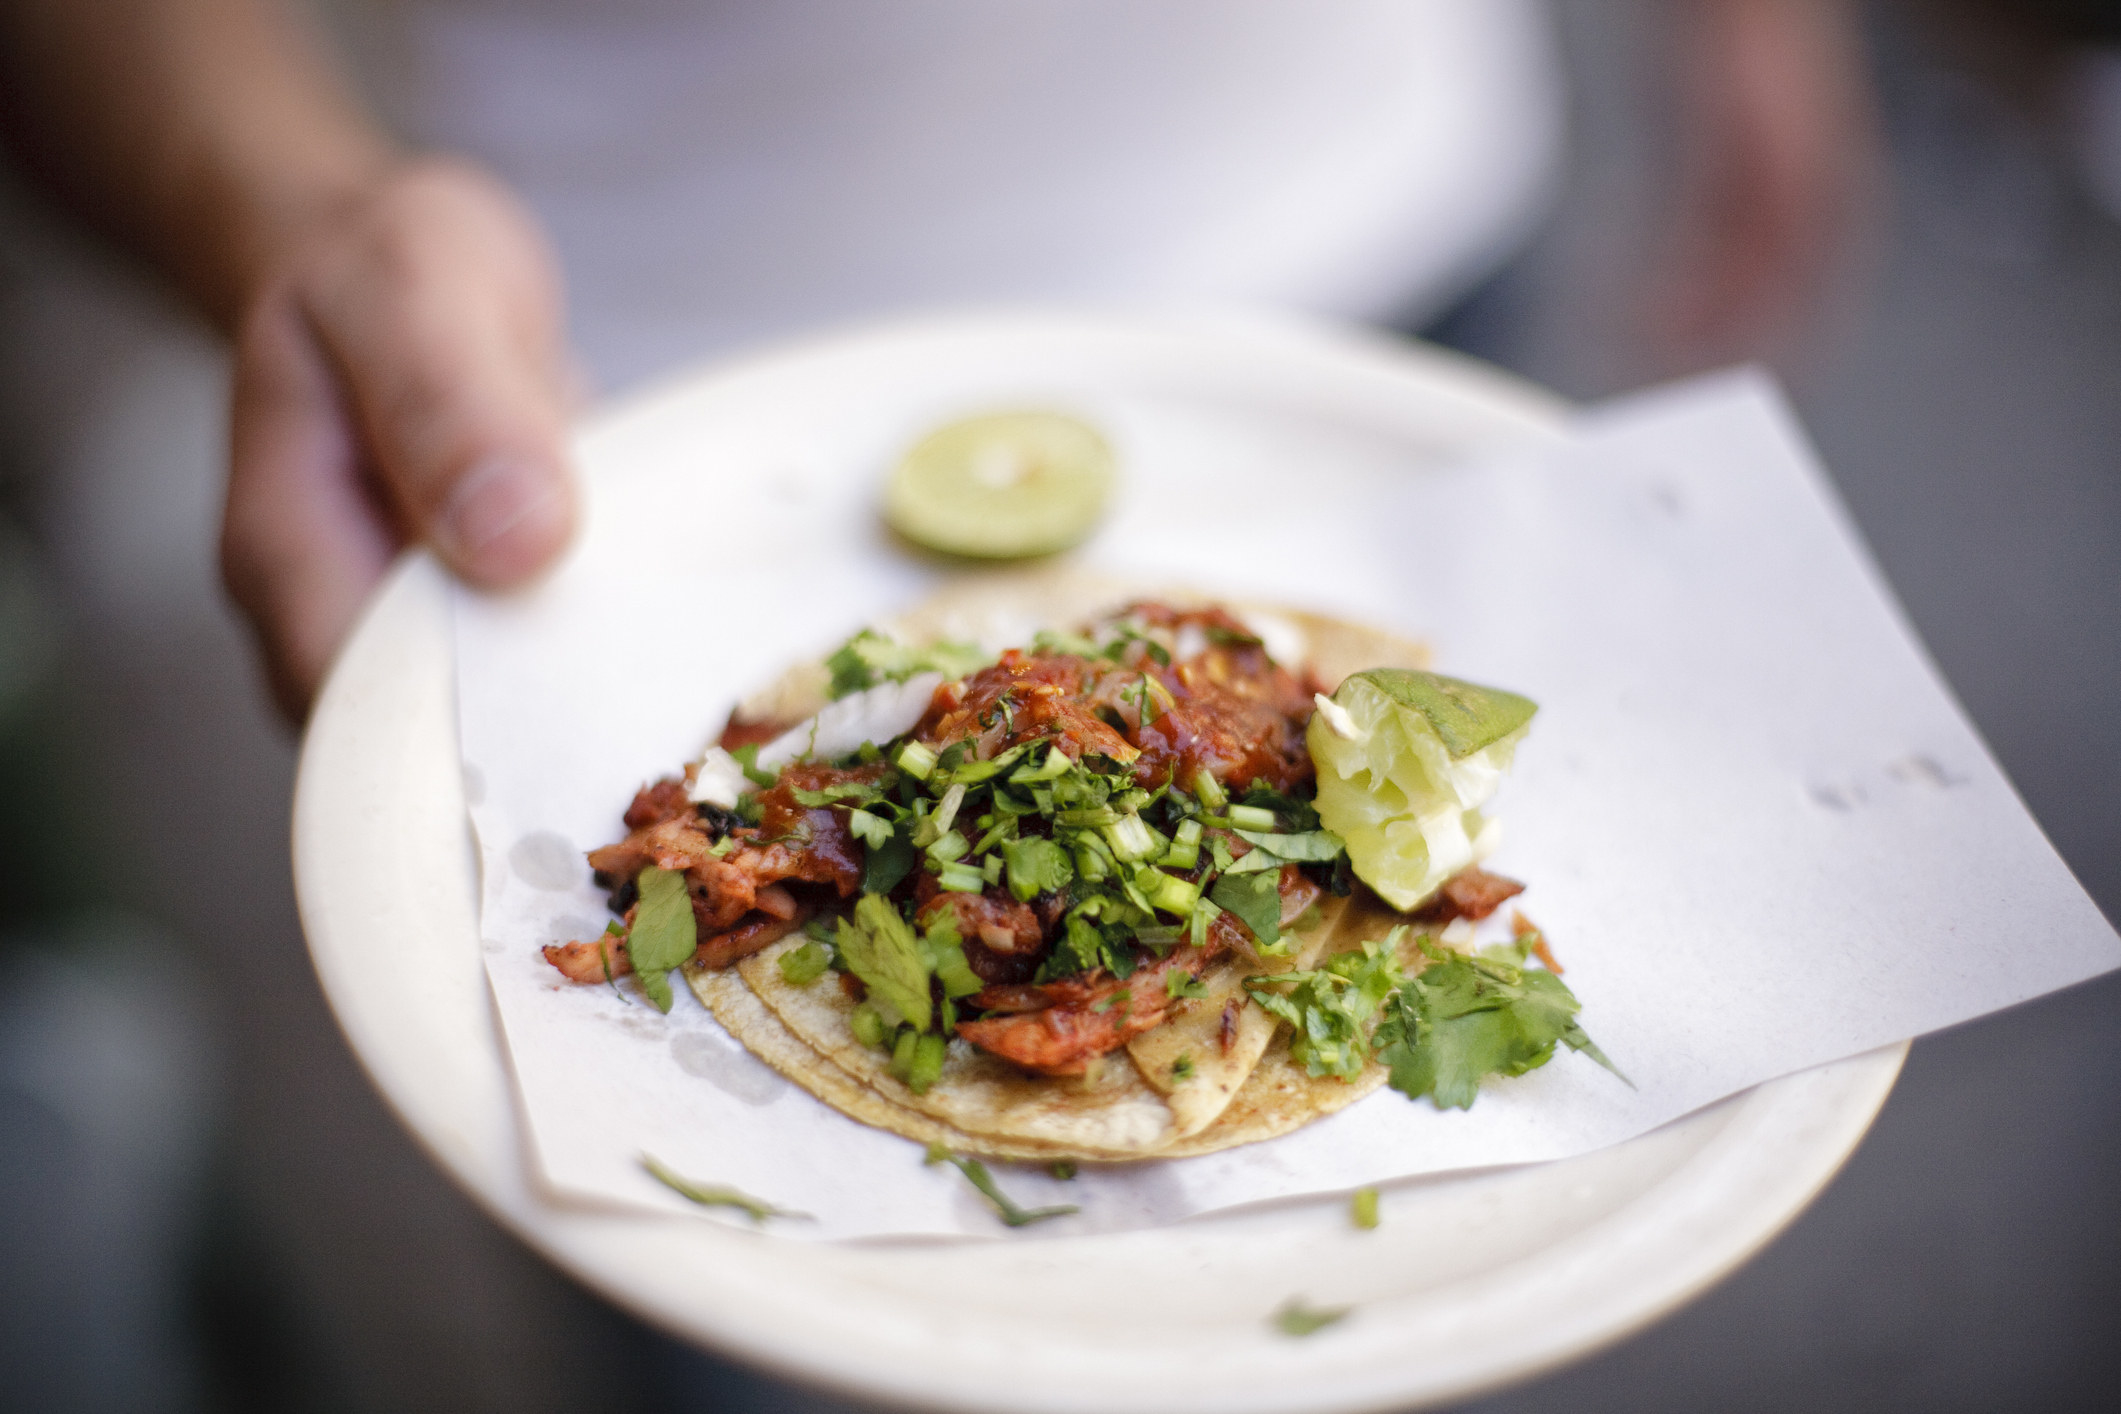 A street taco on a plate.